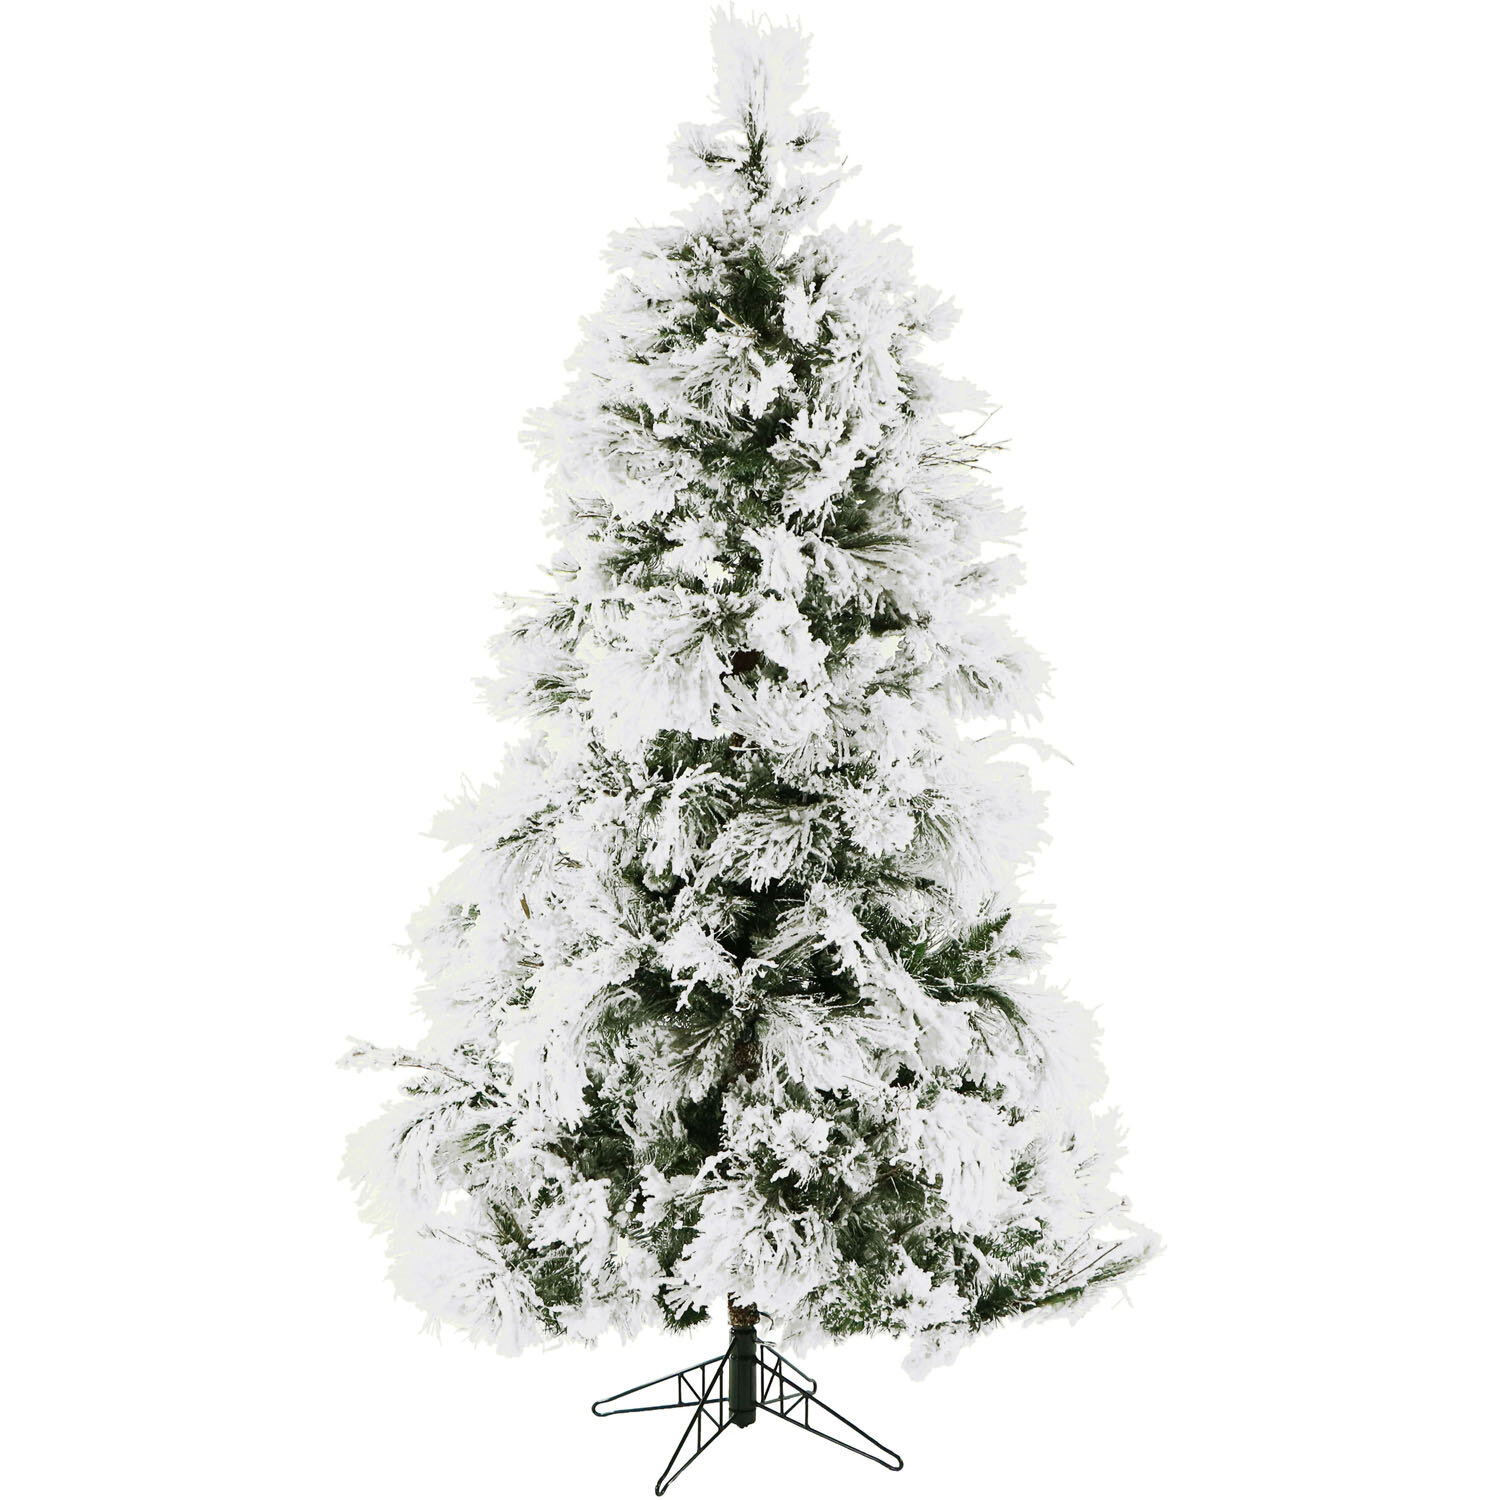 Seasonal LLC 6' Flocked Pre-Lit Bluffton Pine Christmas Tree